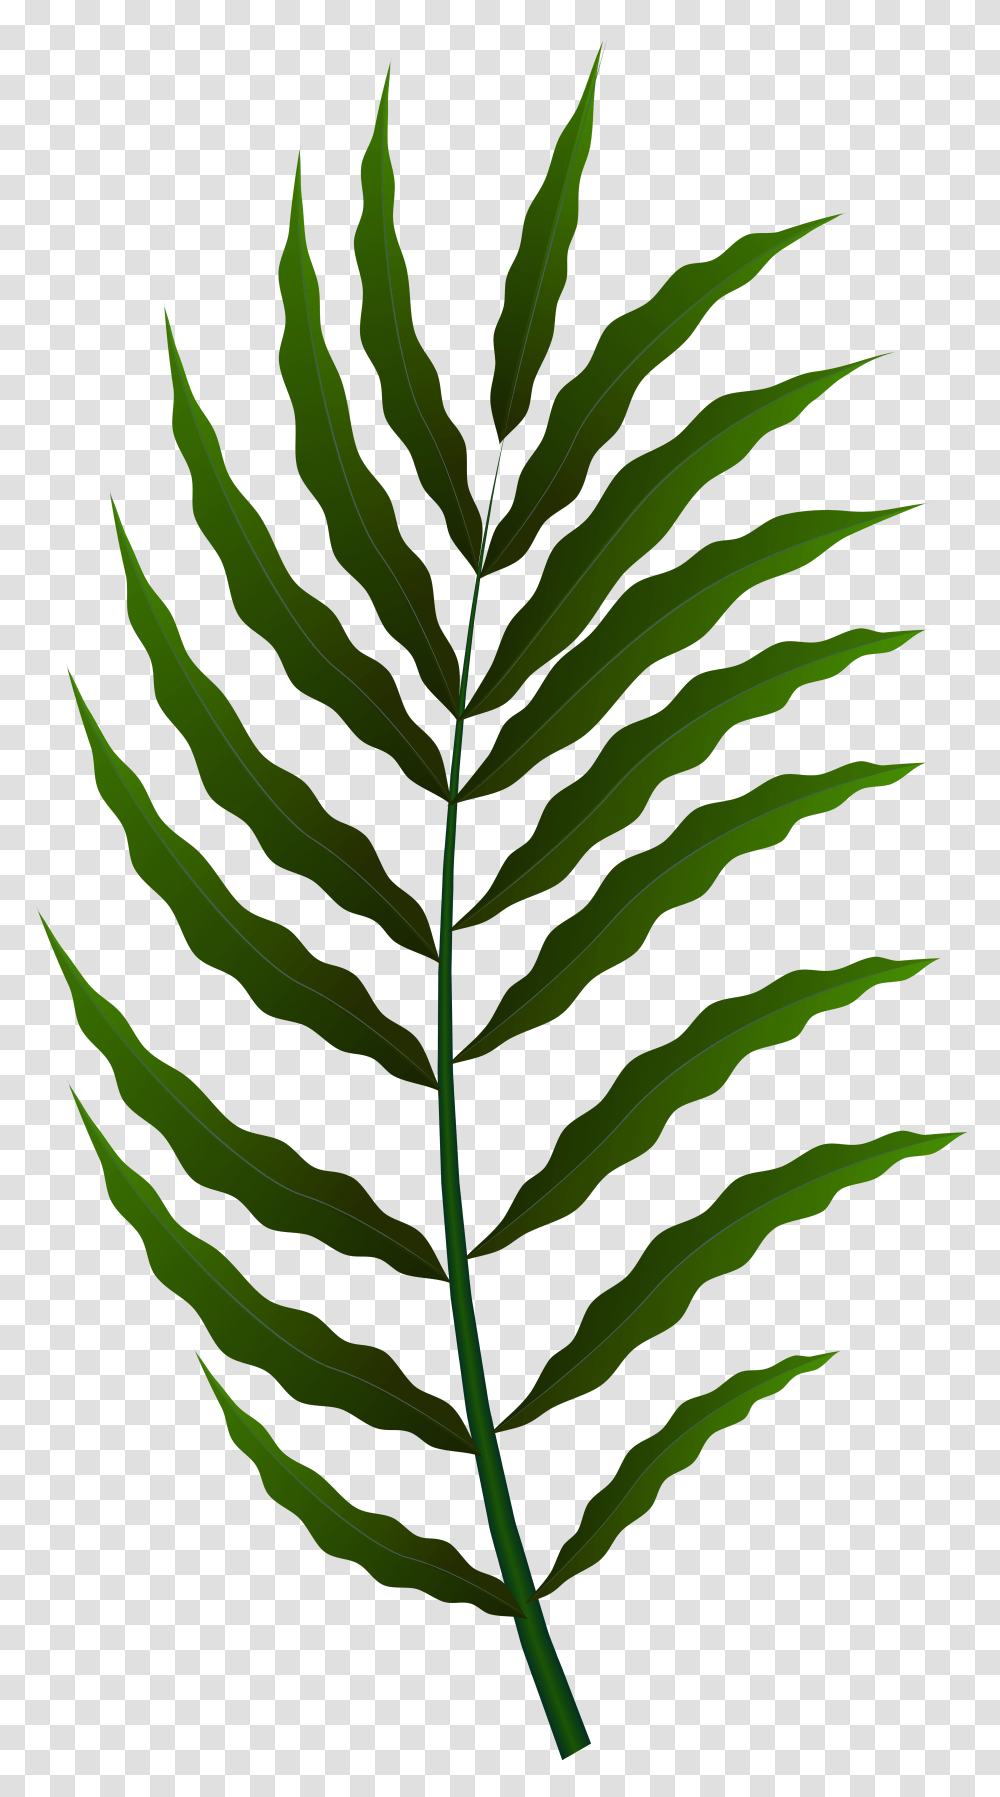 Green Leaf Clip Art, Plant, Veins, Droplet Transparent Png